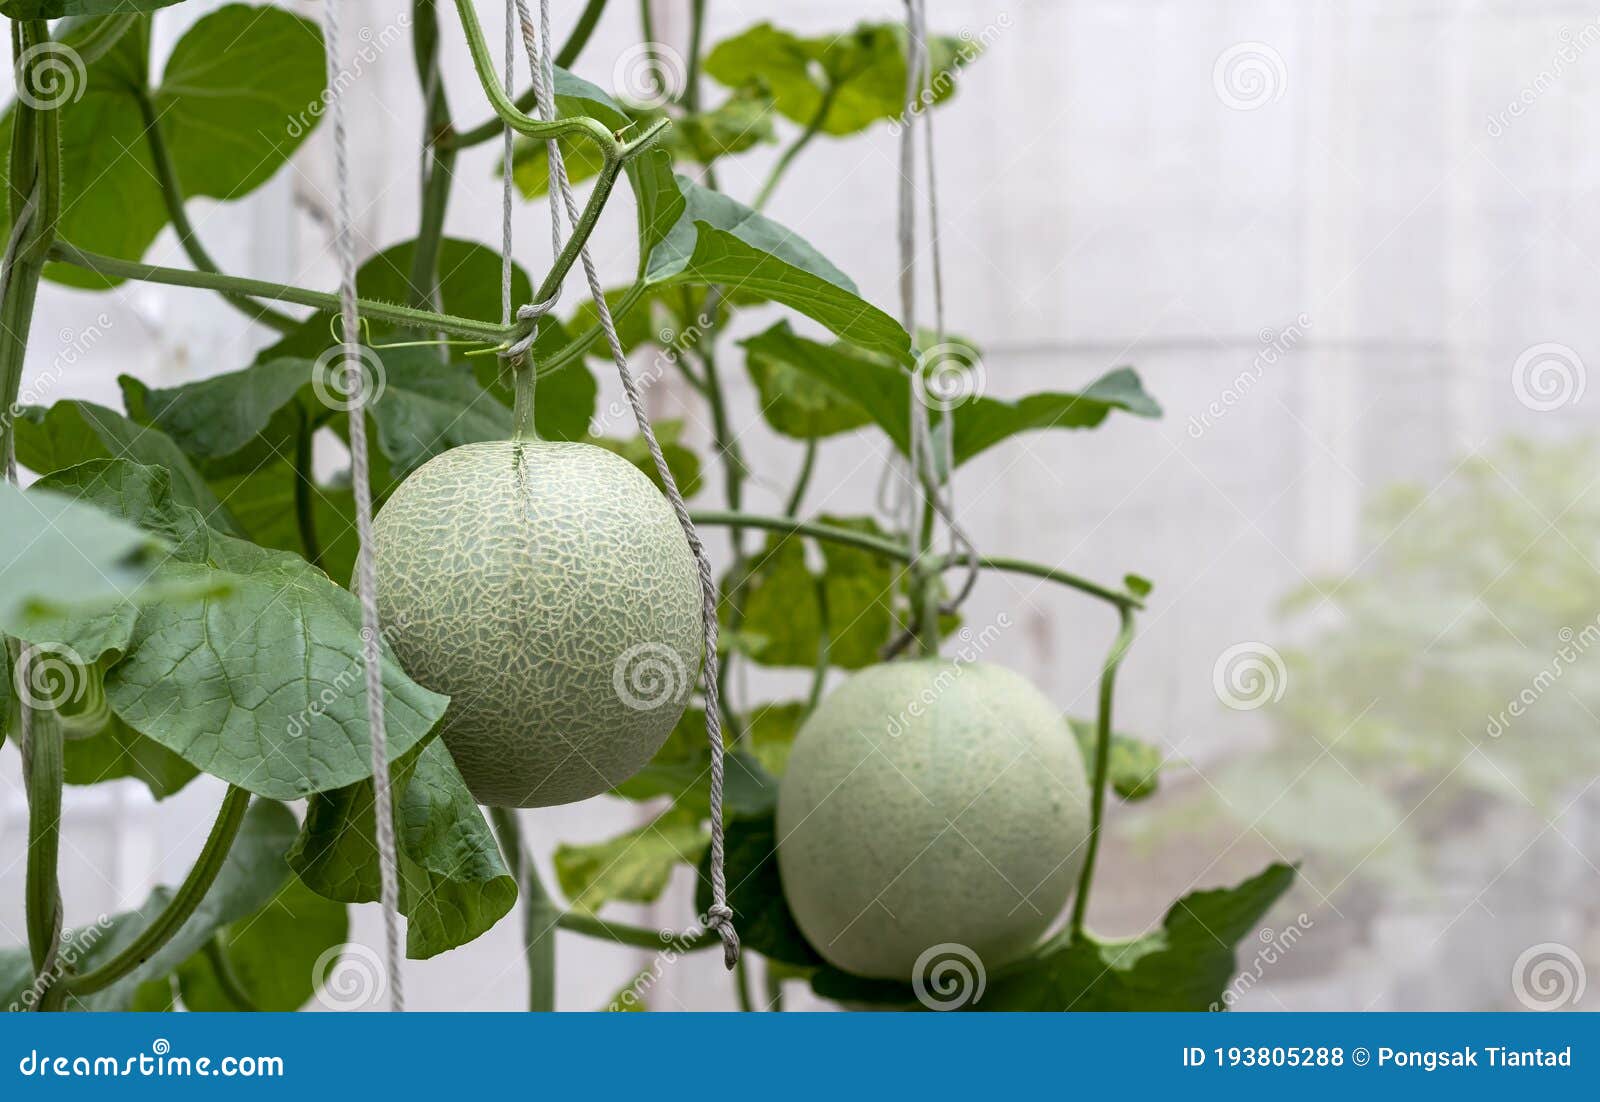 甜瓜生长在温室里. 瓜子是冬瓜科植物中一种大圆形的甜肉 库存图片 - 图片 包括有 金瓜, 庭院: 192994567